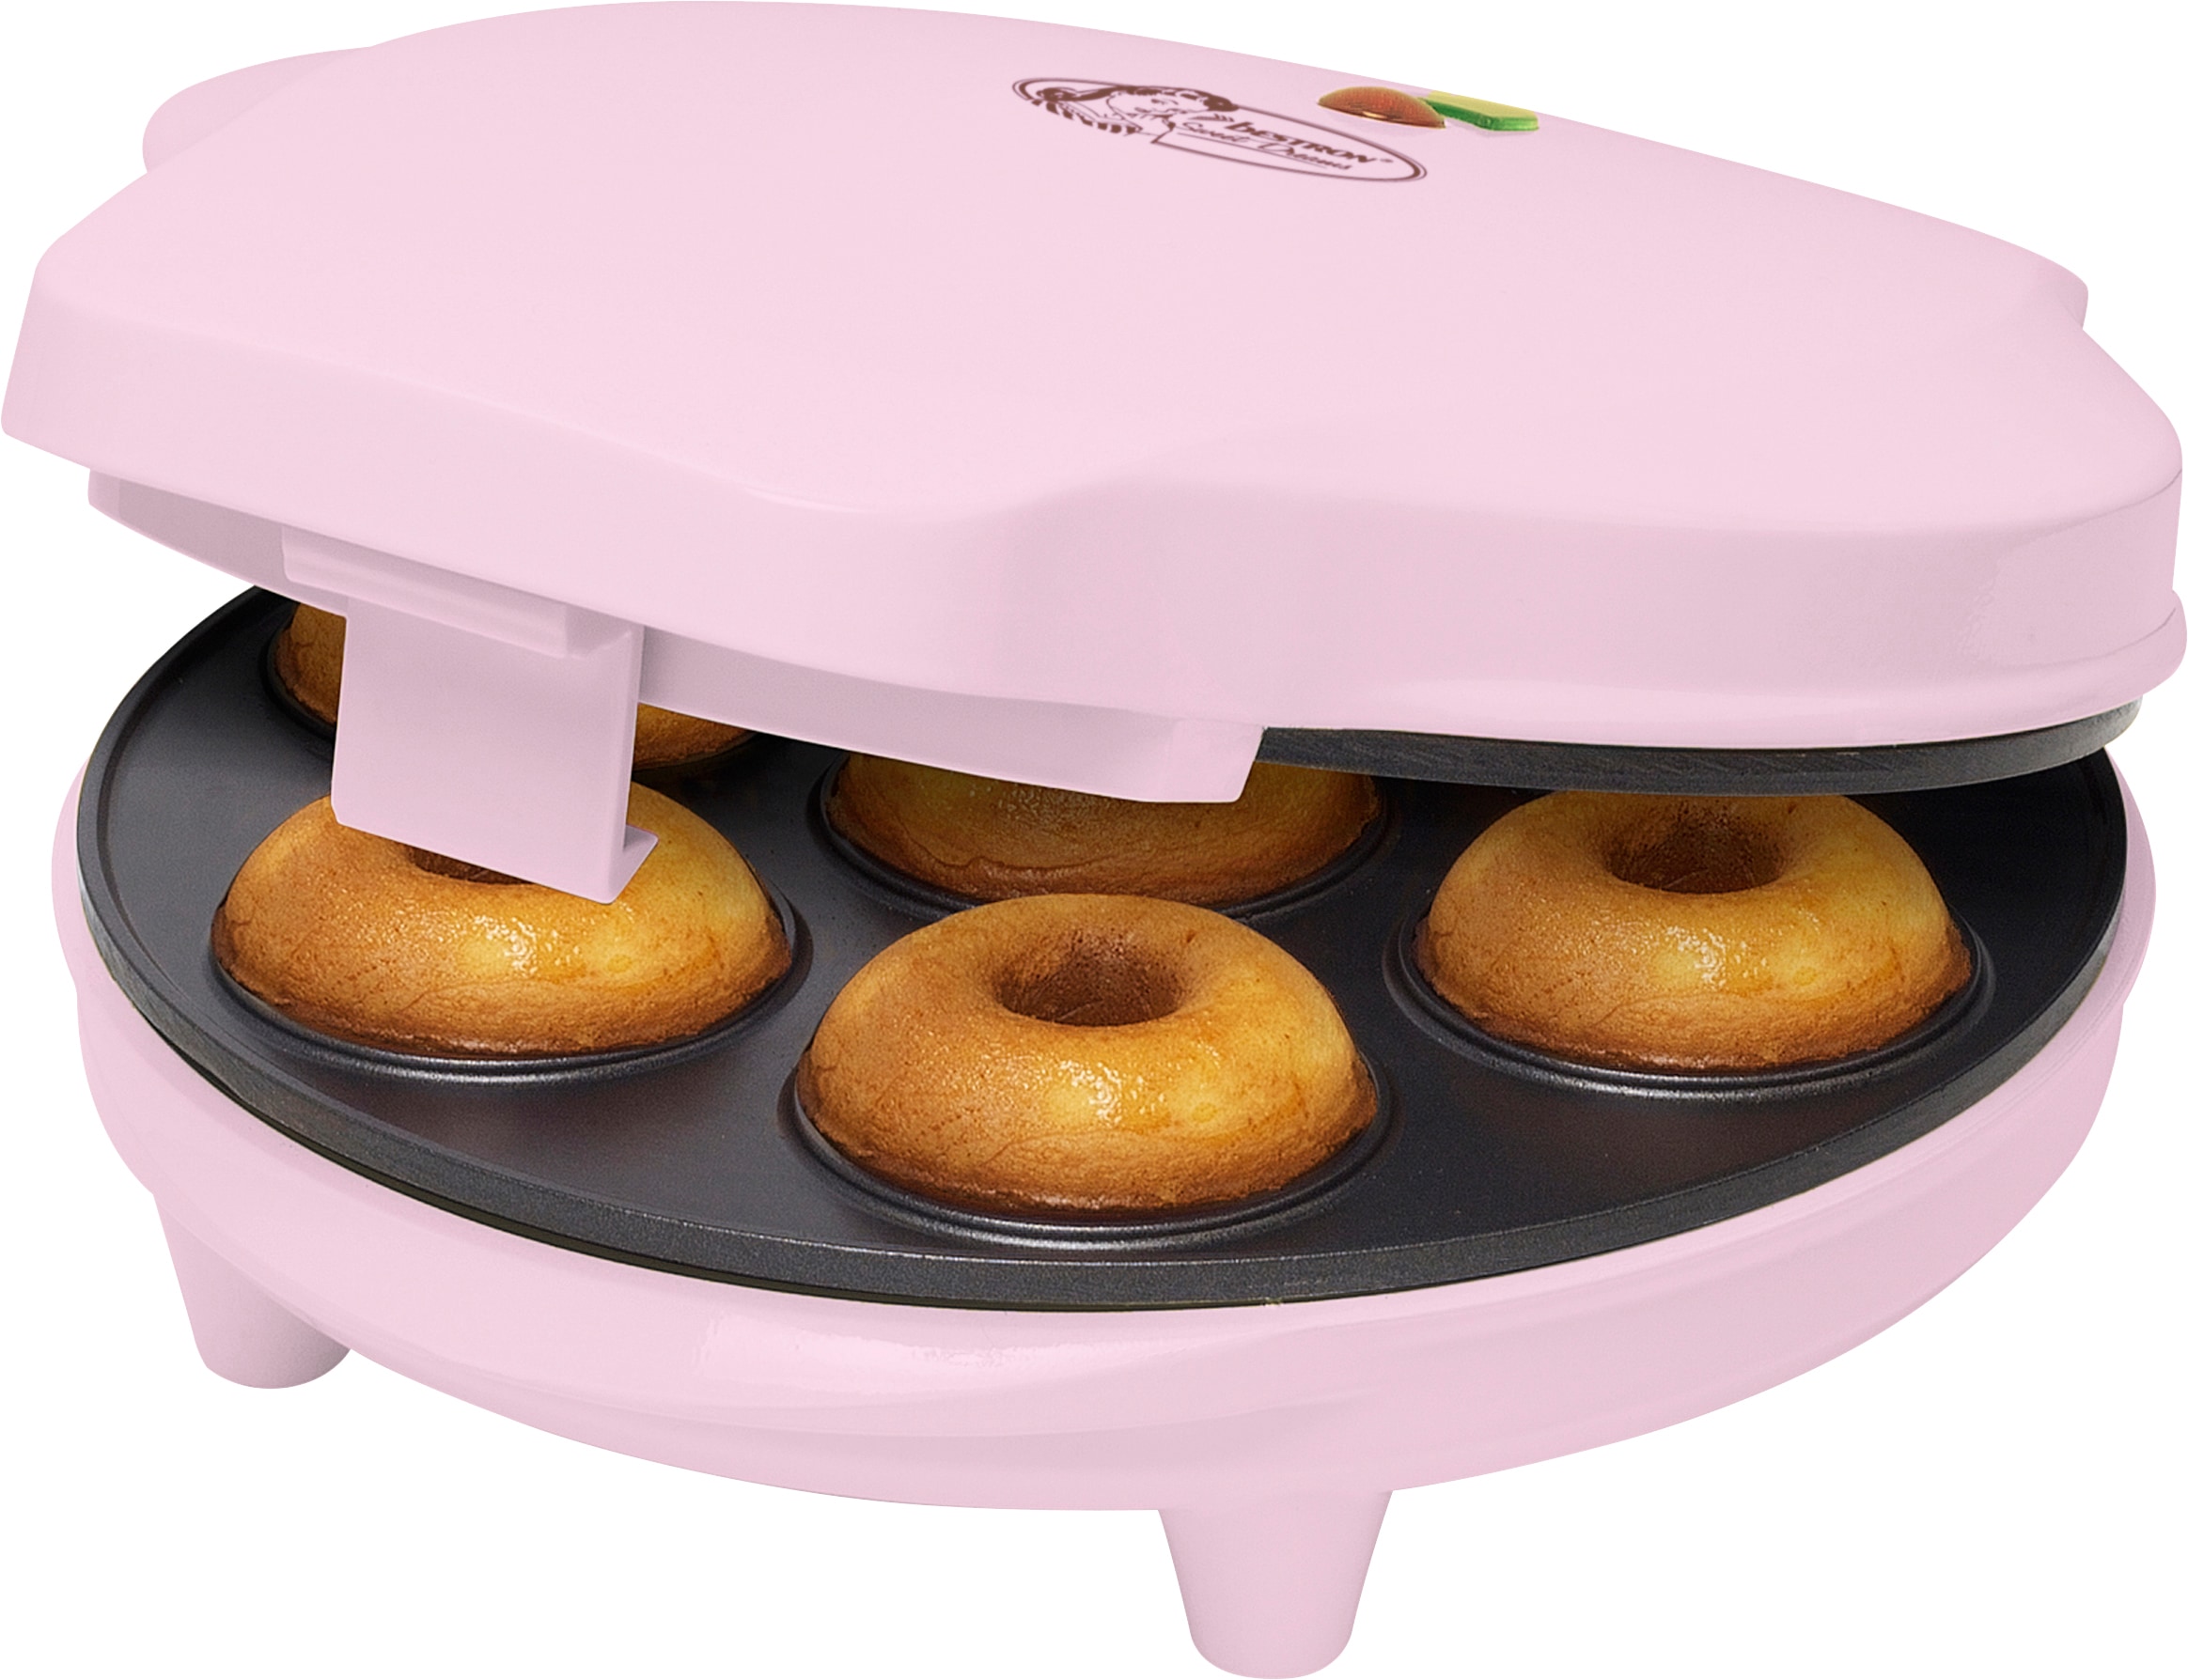 bestron XXL Waffeleisen »Donut-Maker 3 Antihaftbeschichtung, Garantie 700 W, Rosa Dreams, Design, Sweet im Retro Jahren ADM218SDP«, mit